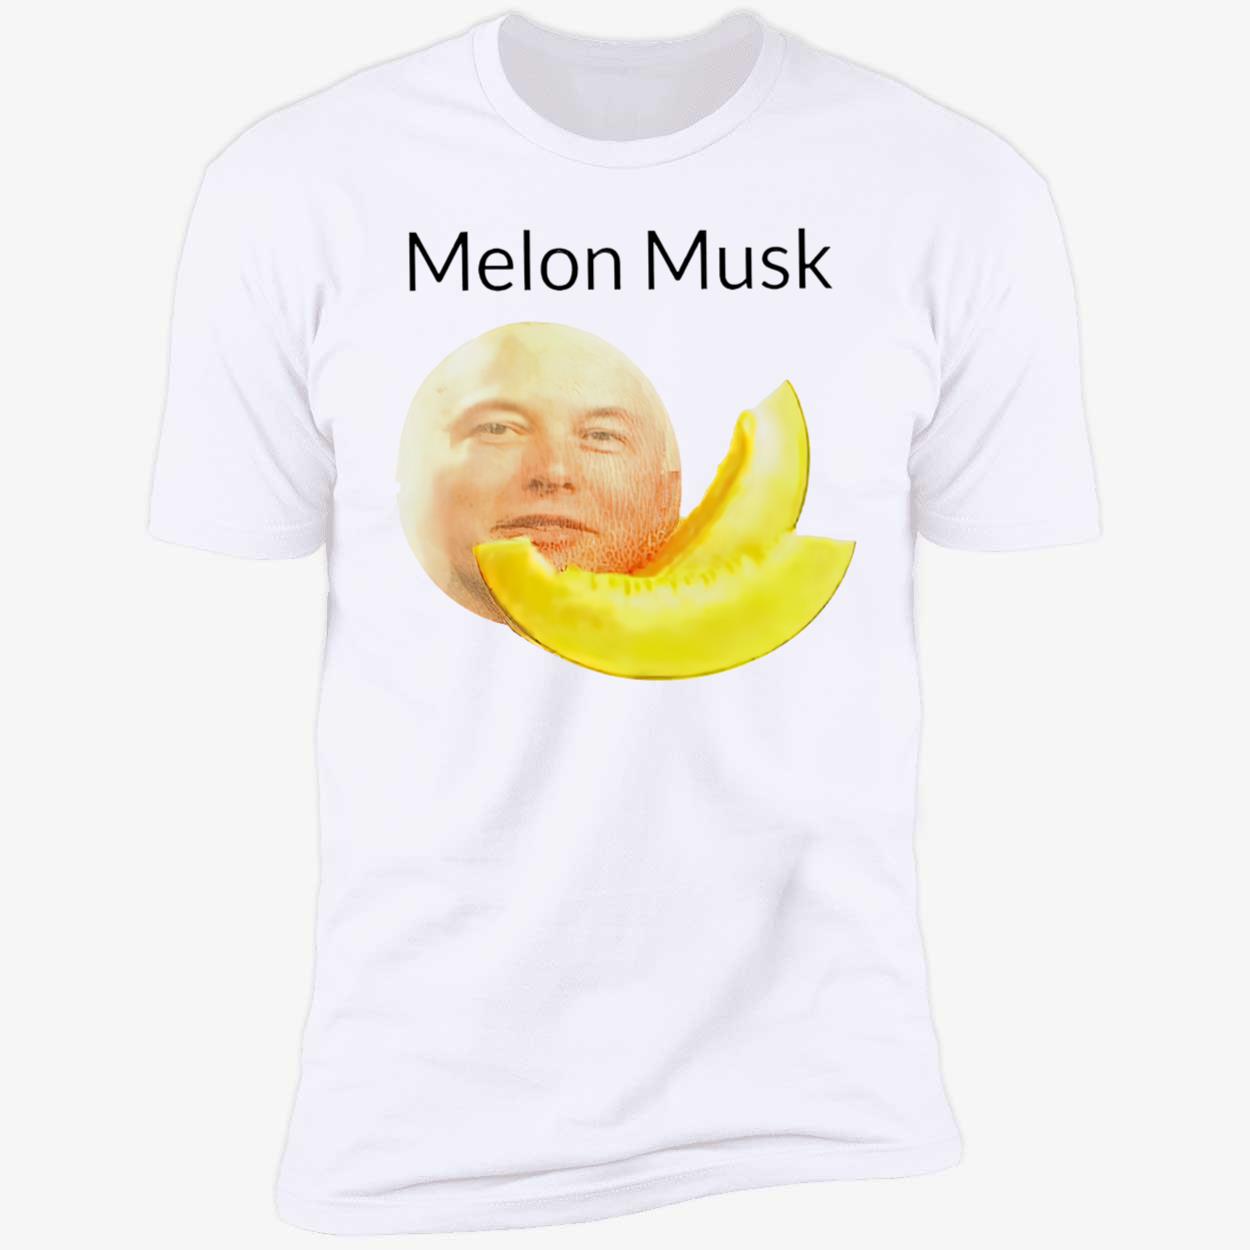 Melon Musk Shirt